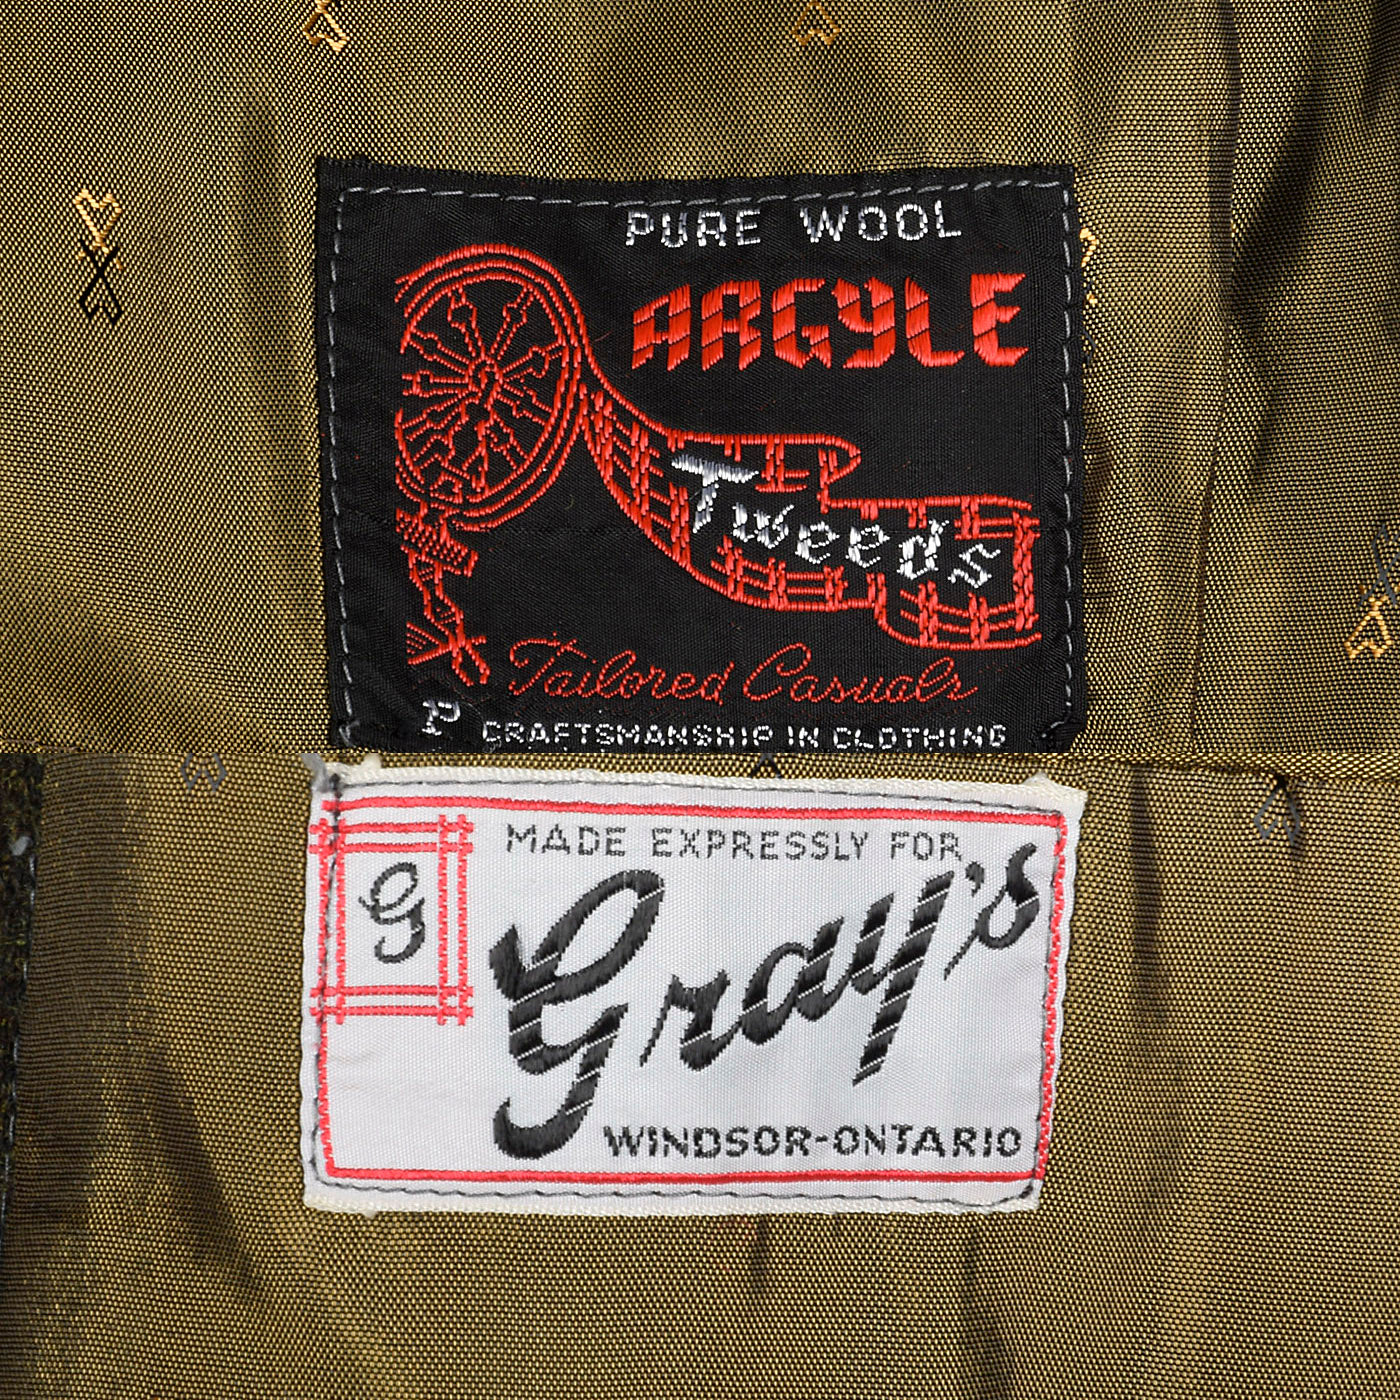 1960s Argyle Tweeds